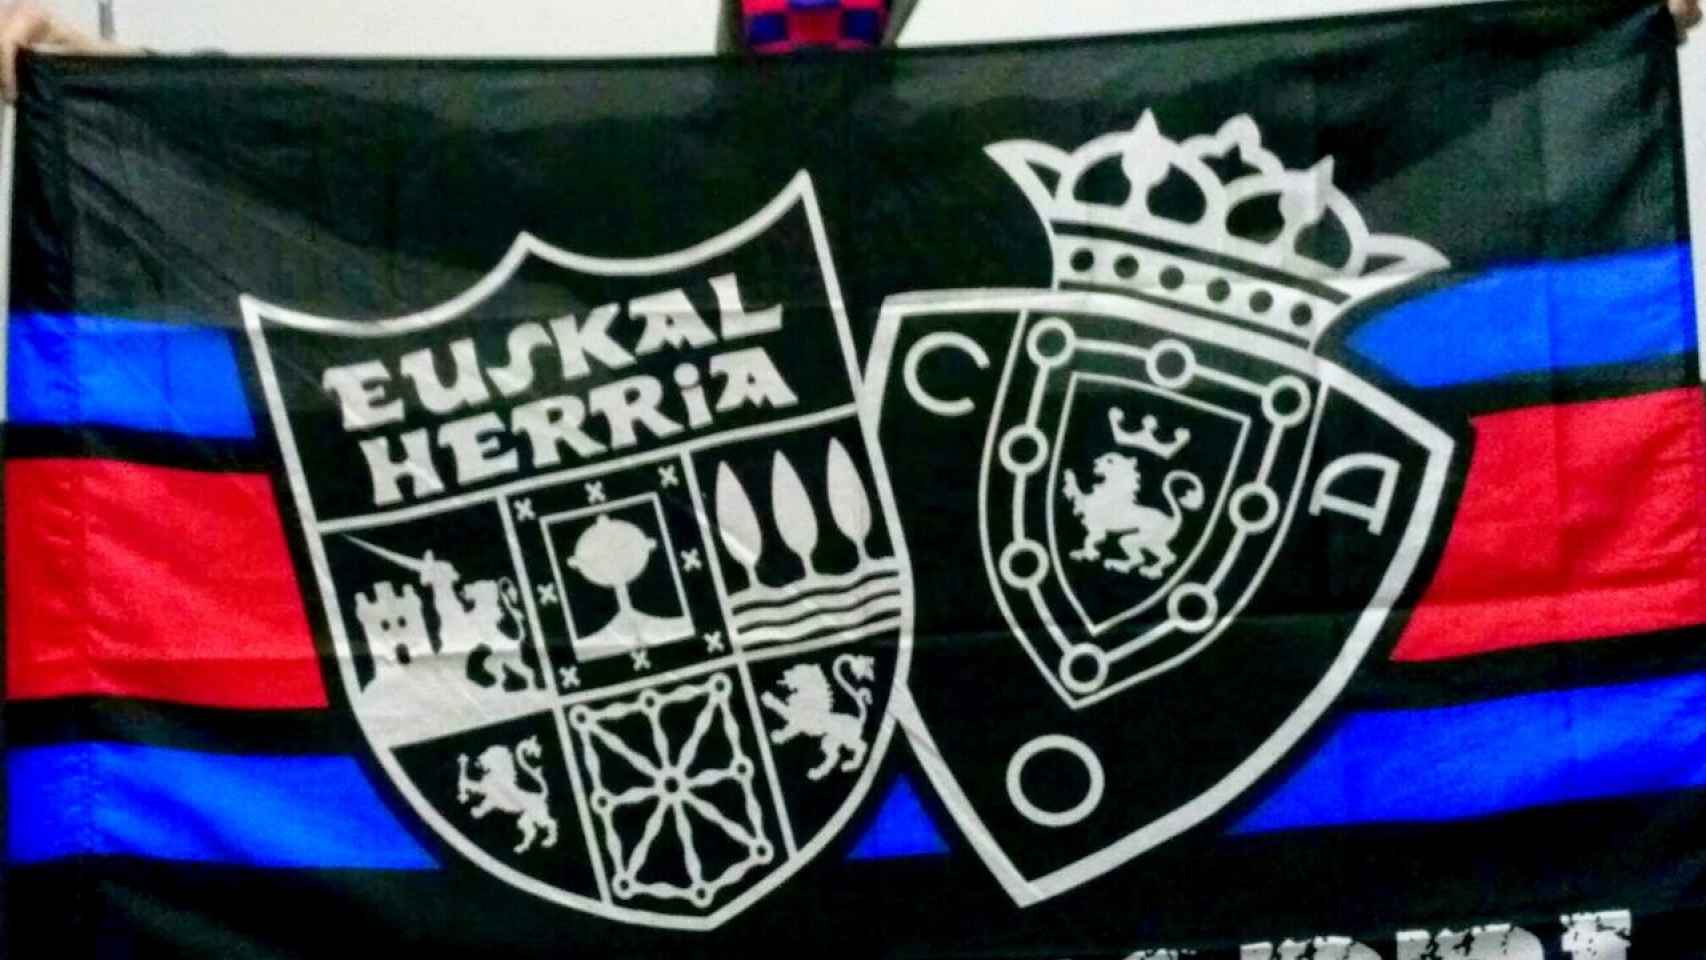 Bandera de Indar Gorri con escudo de Euskal Herria.